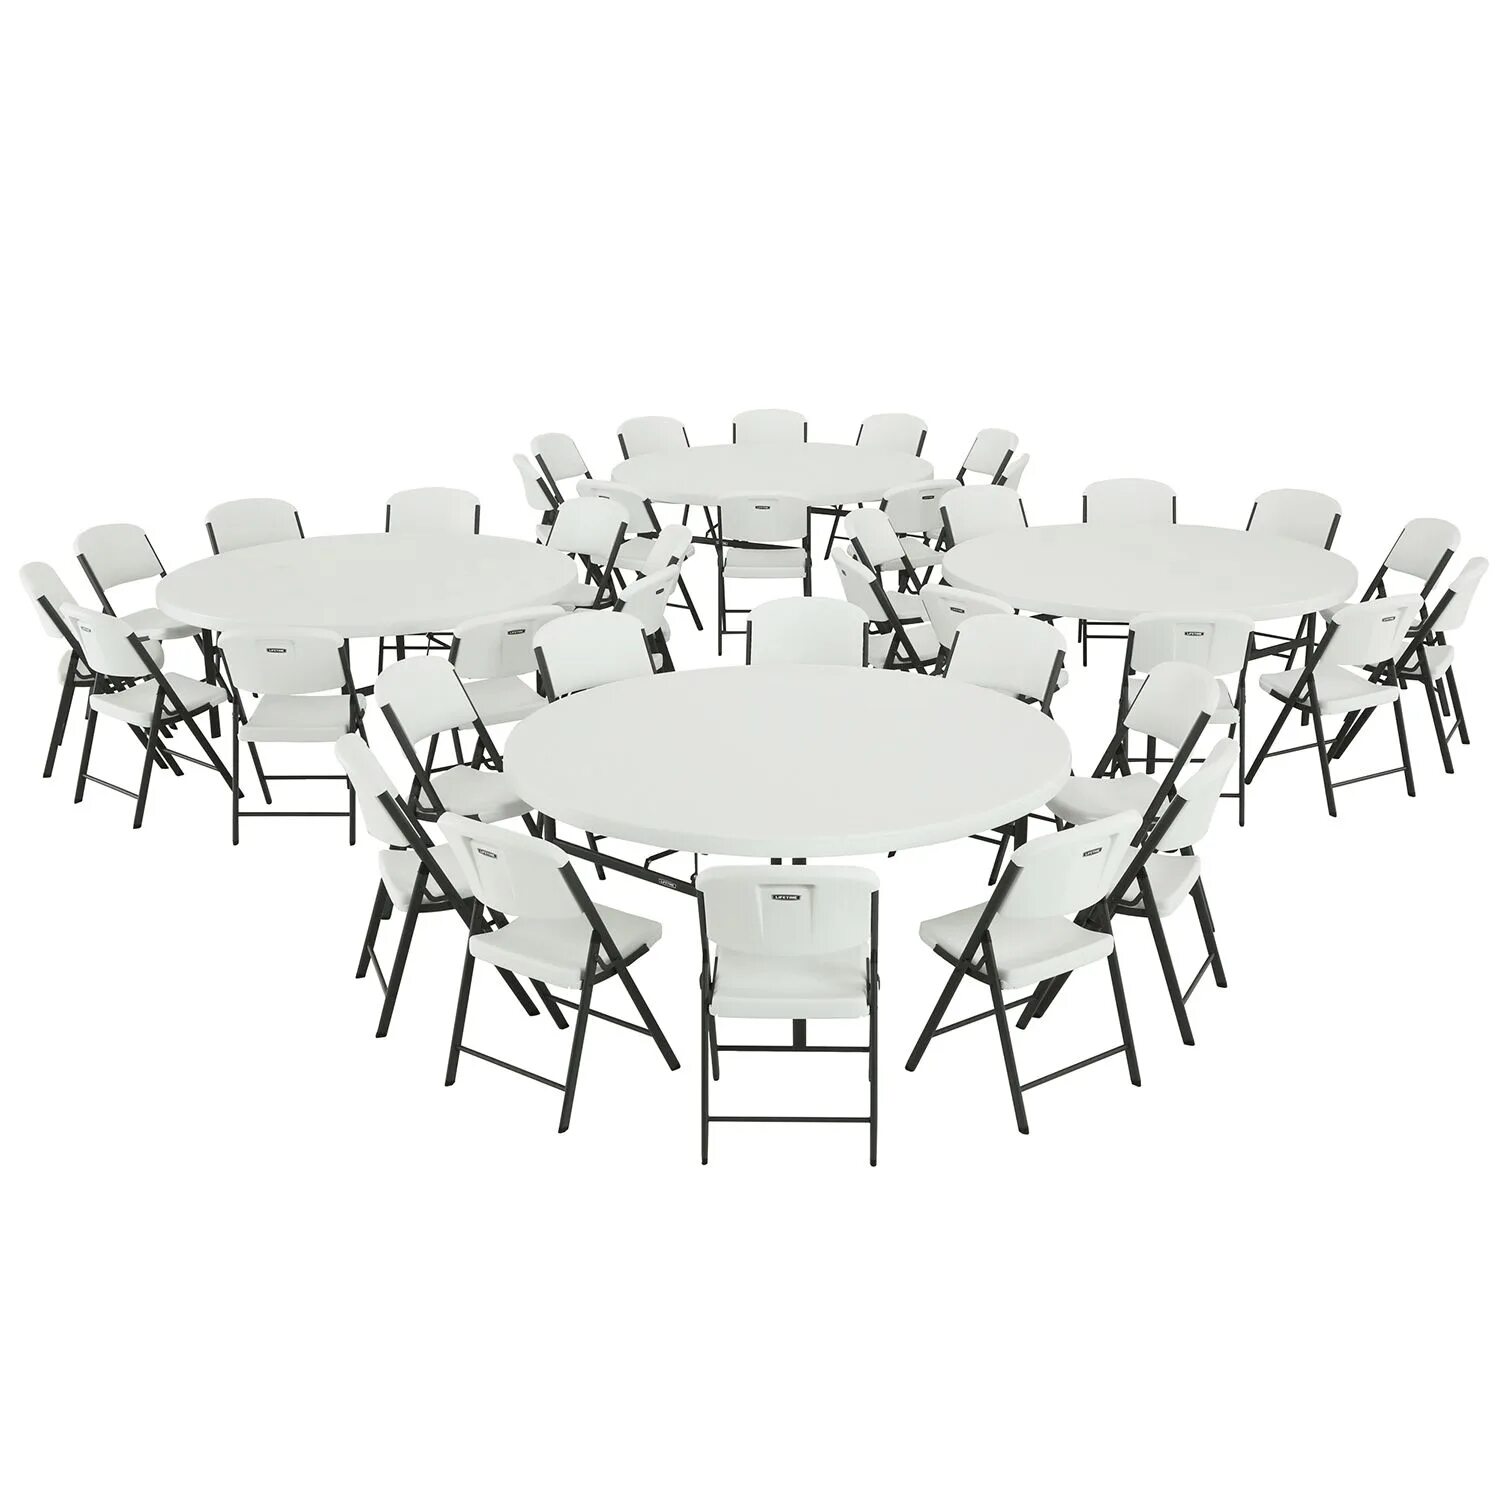 За круглый стол на 51 стульев. Стол модульный круглый. Круглый стол для выставки. Круглый стол для школьников. Круглый стол для большой семьи.